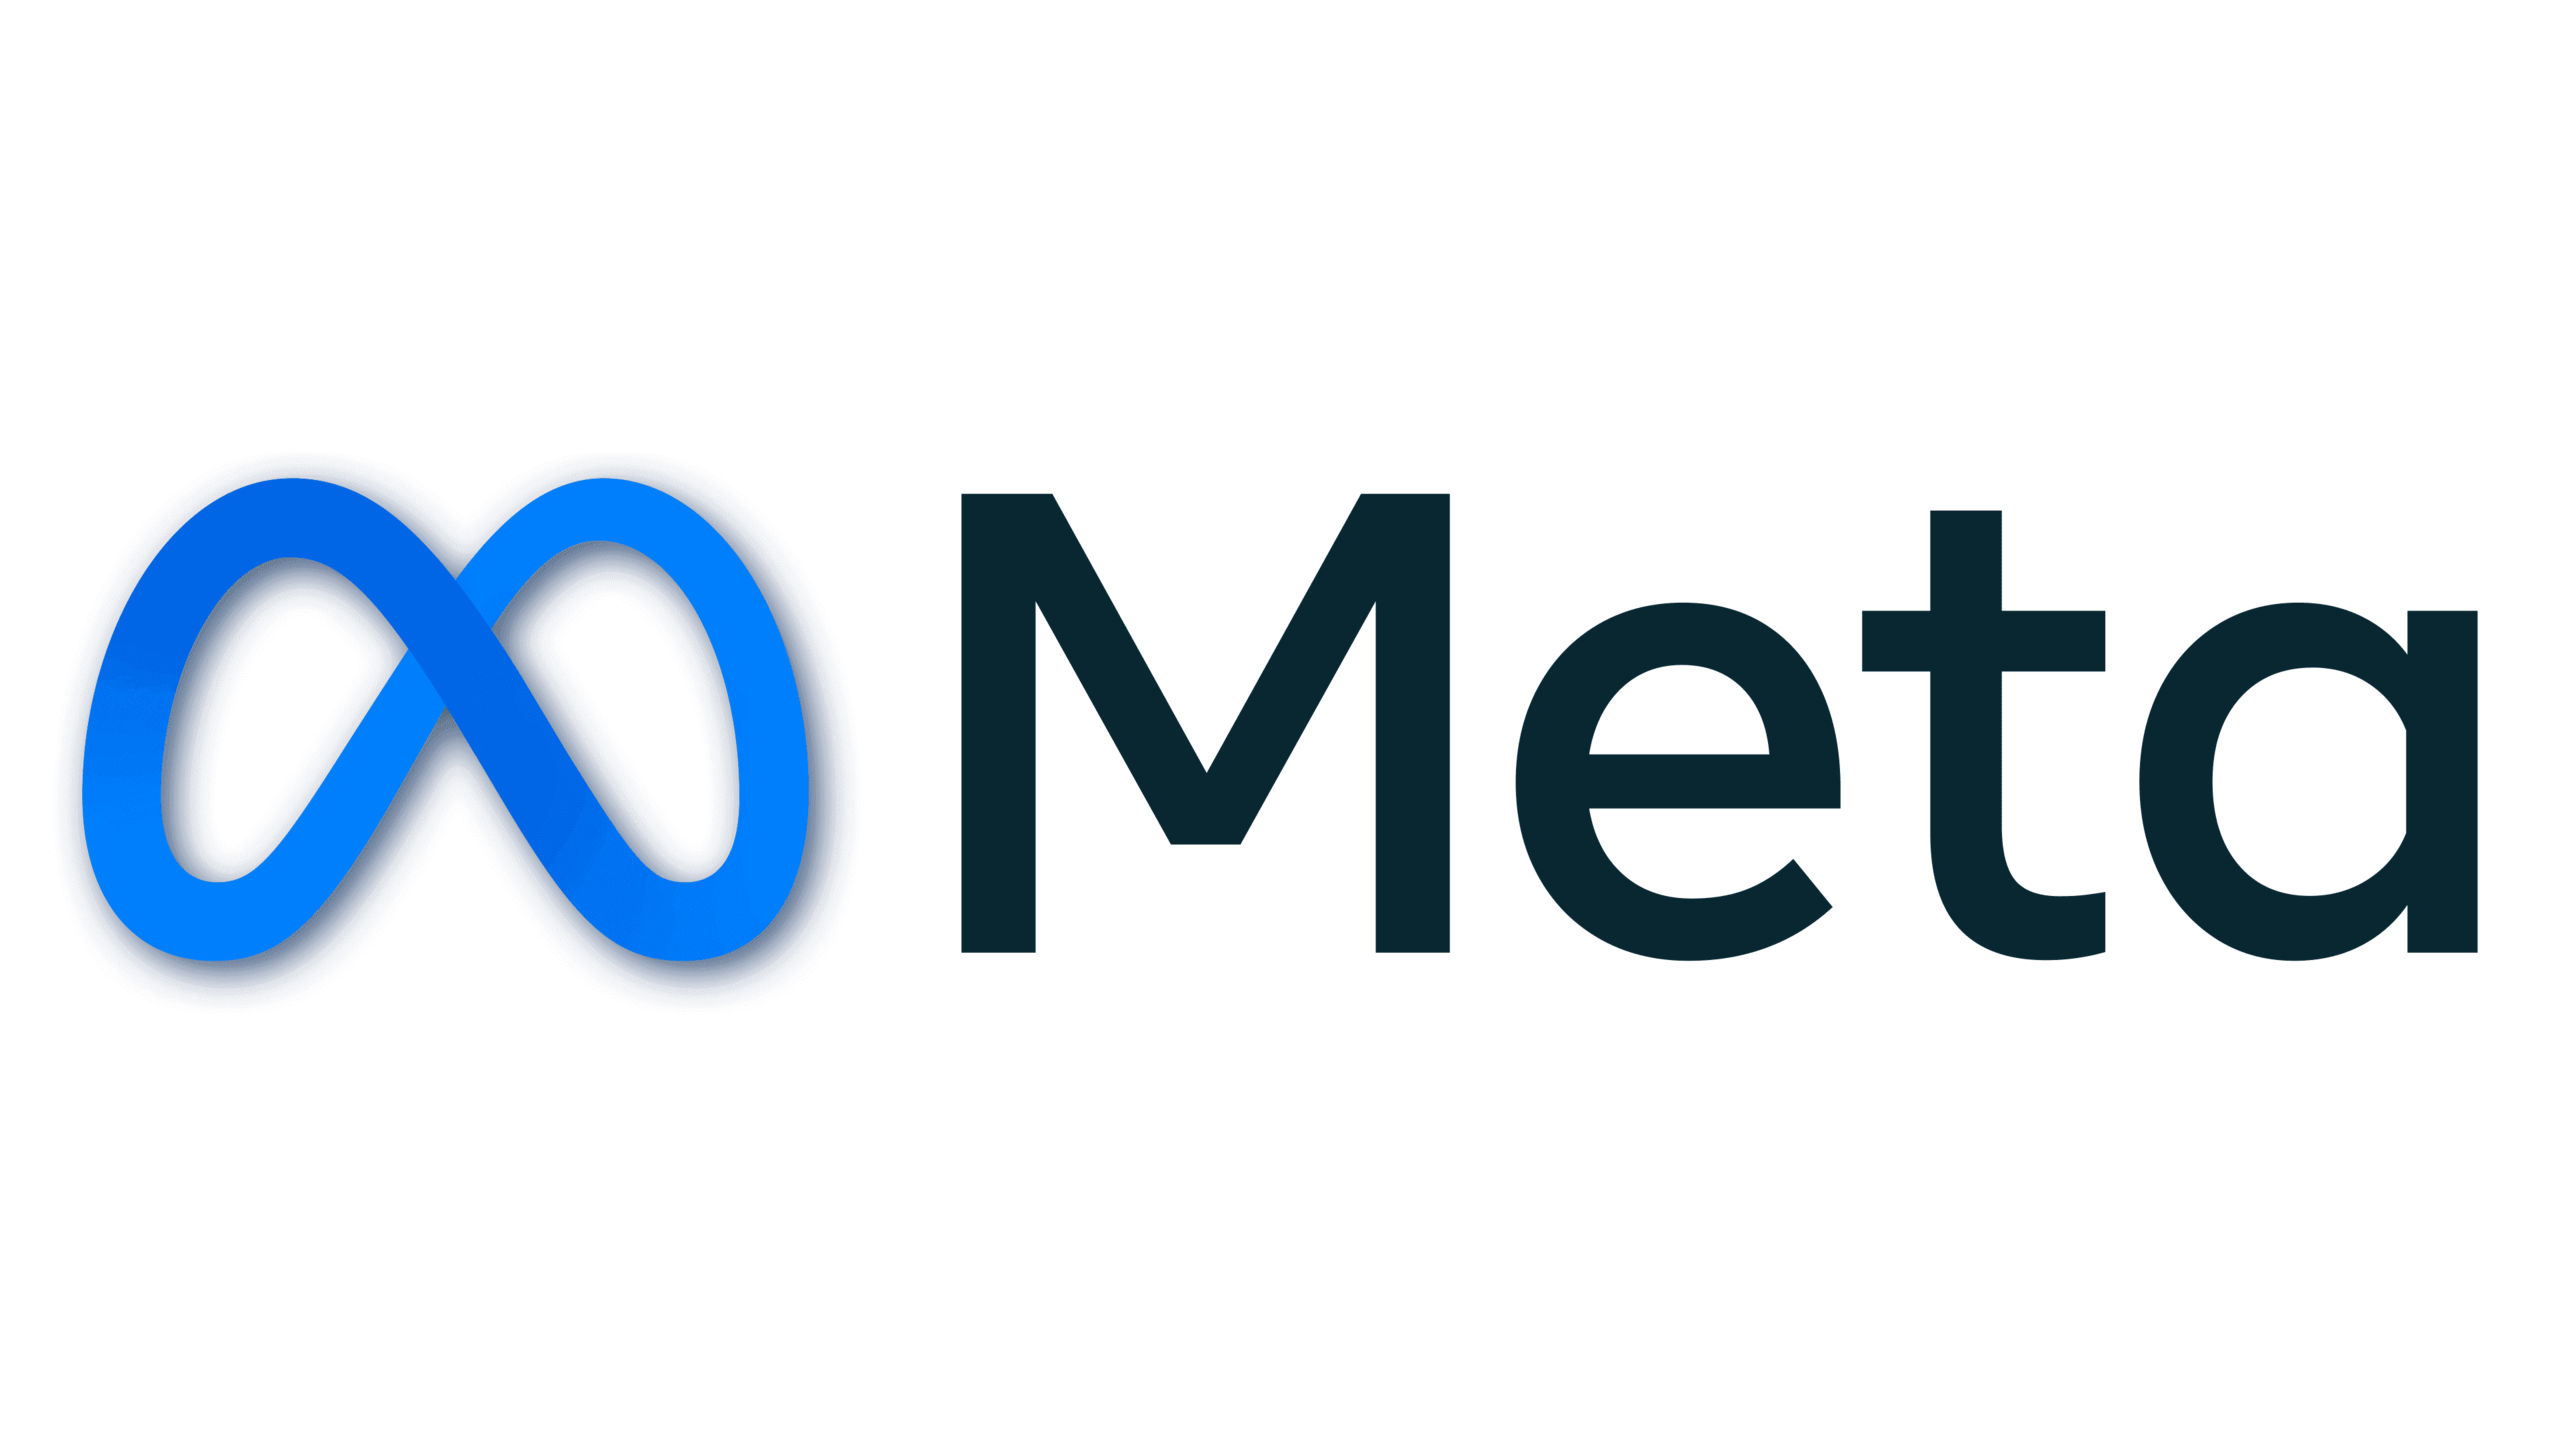 Meta-Logo-1